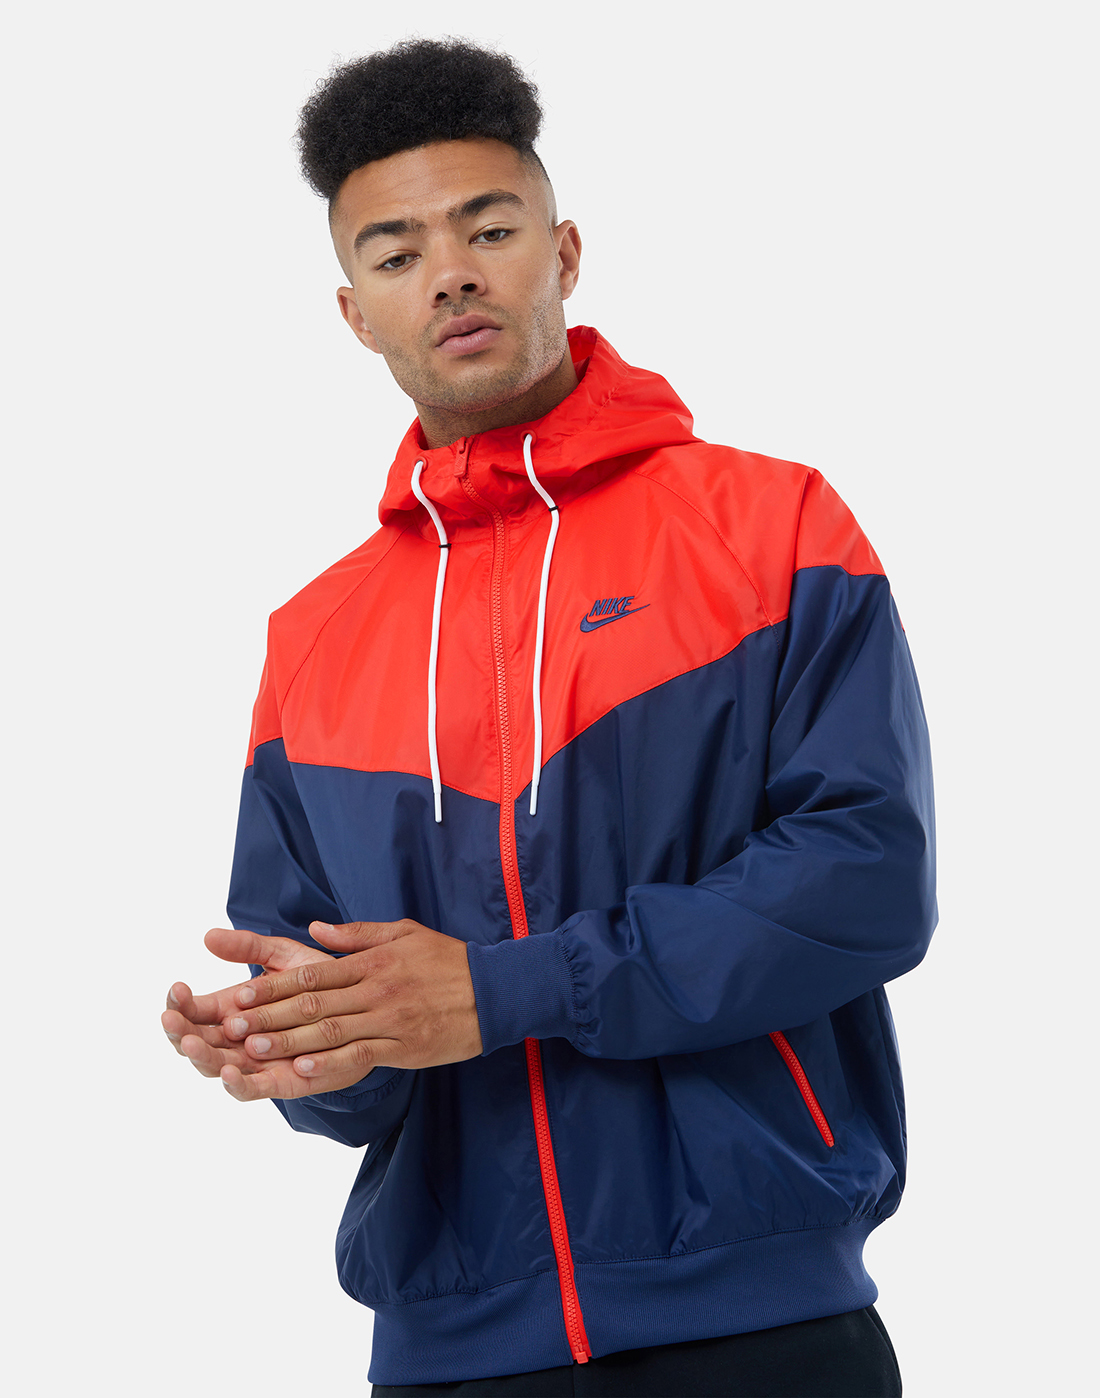 Nike Mens Woven Jacket - Navy | Life Style Sports UK